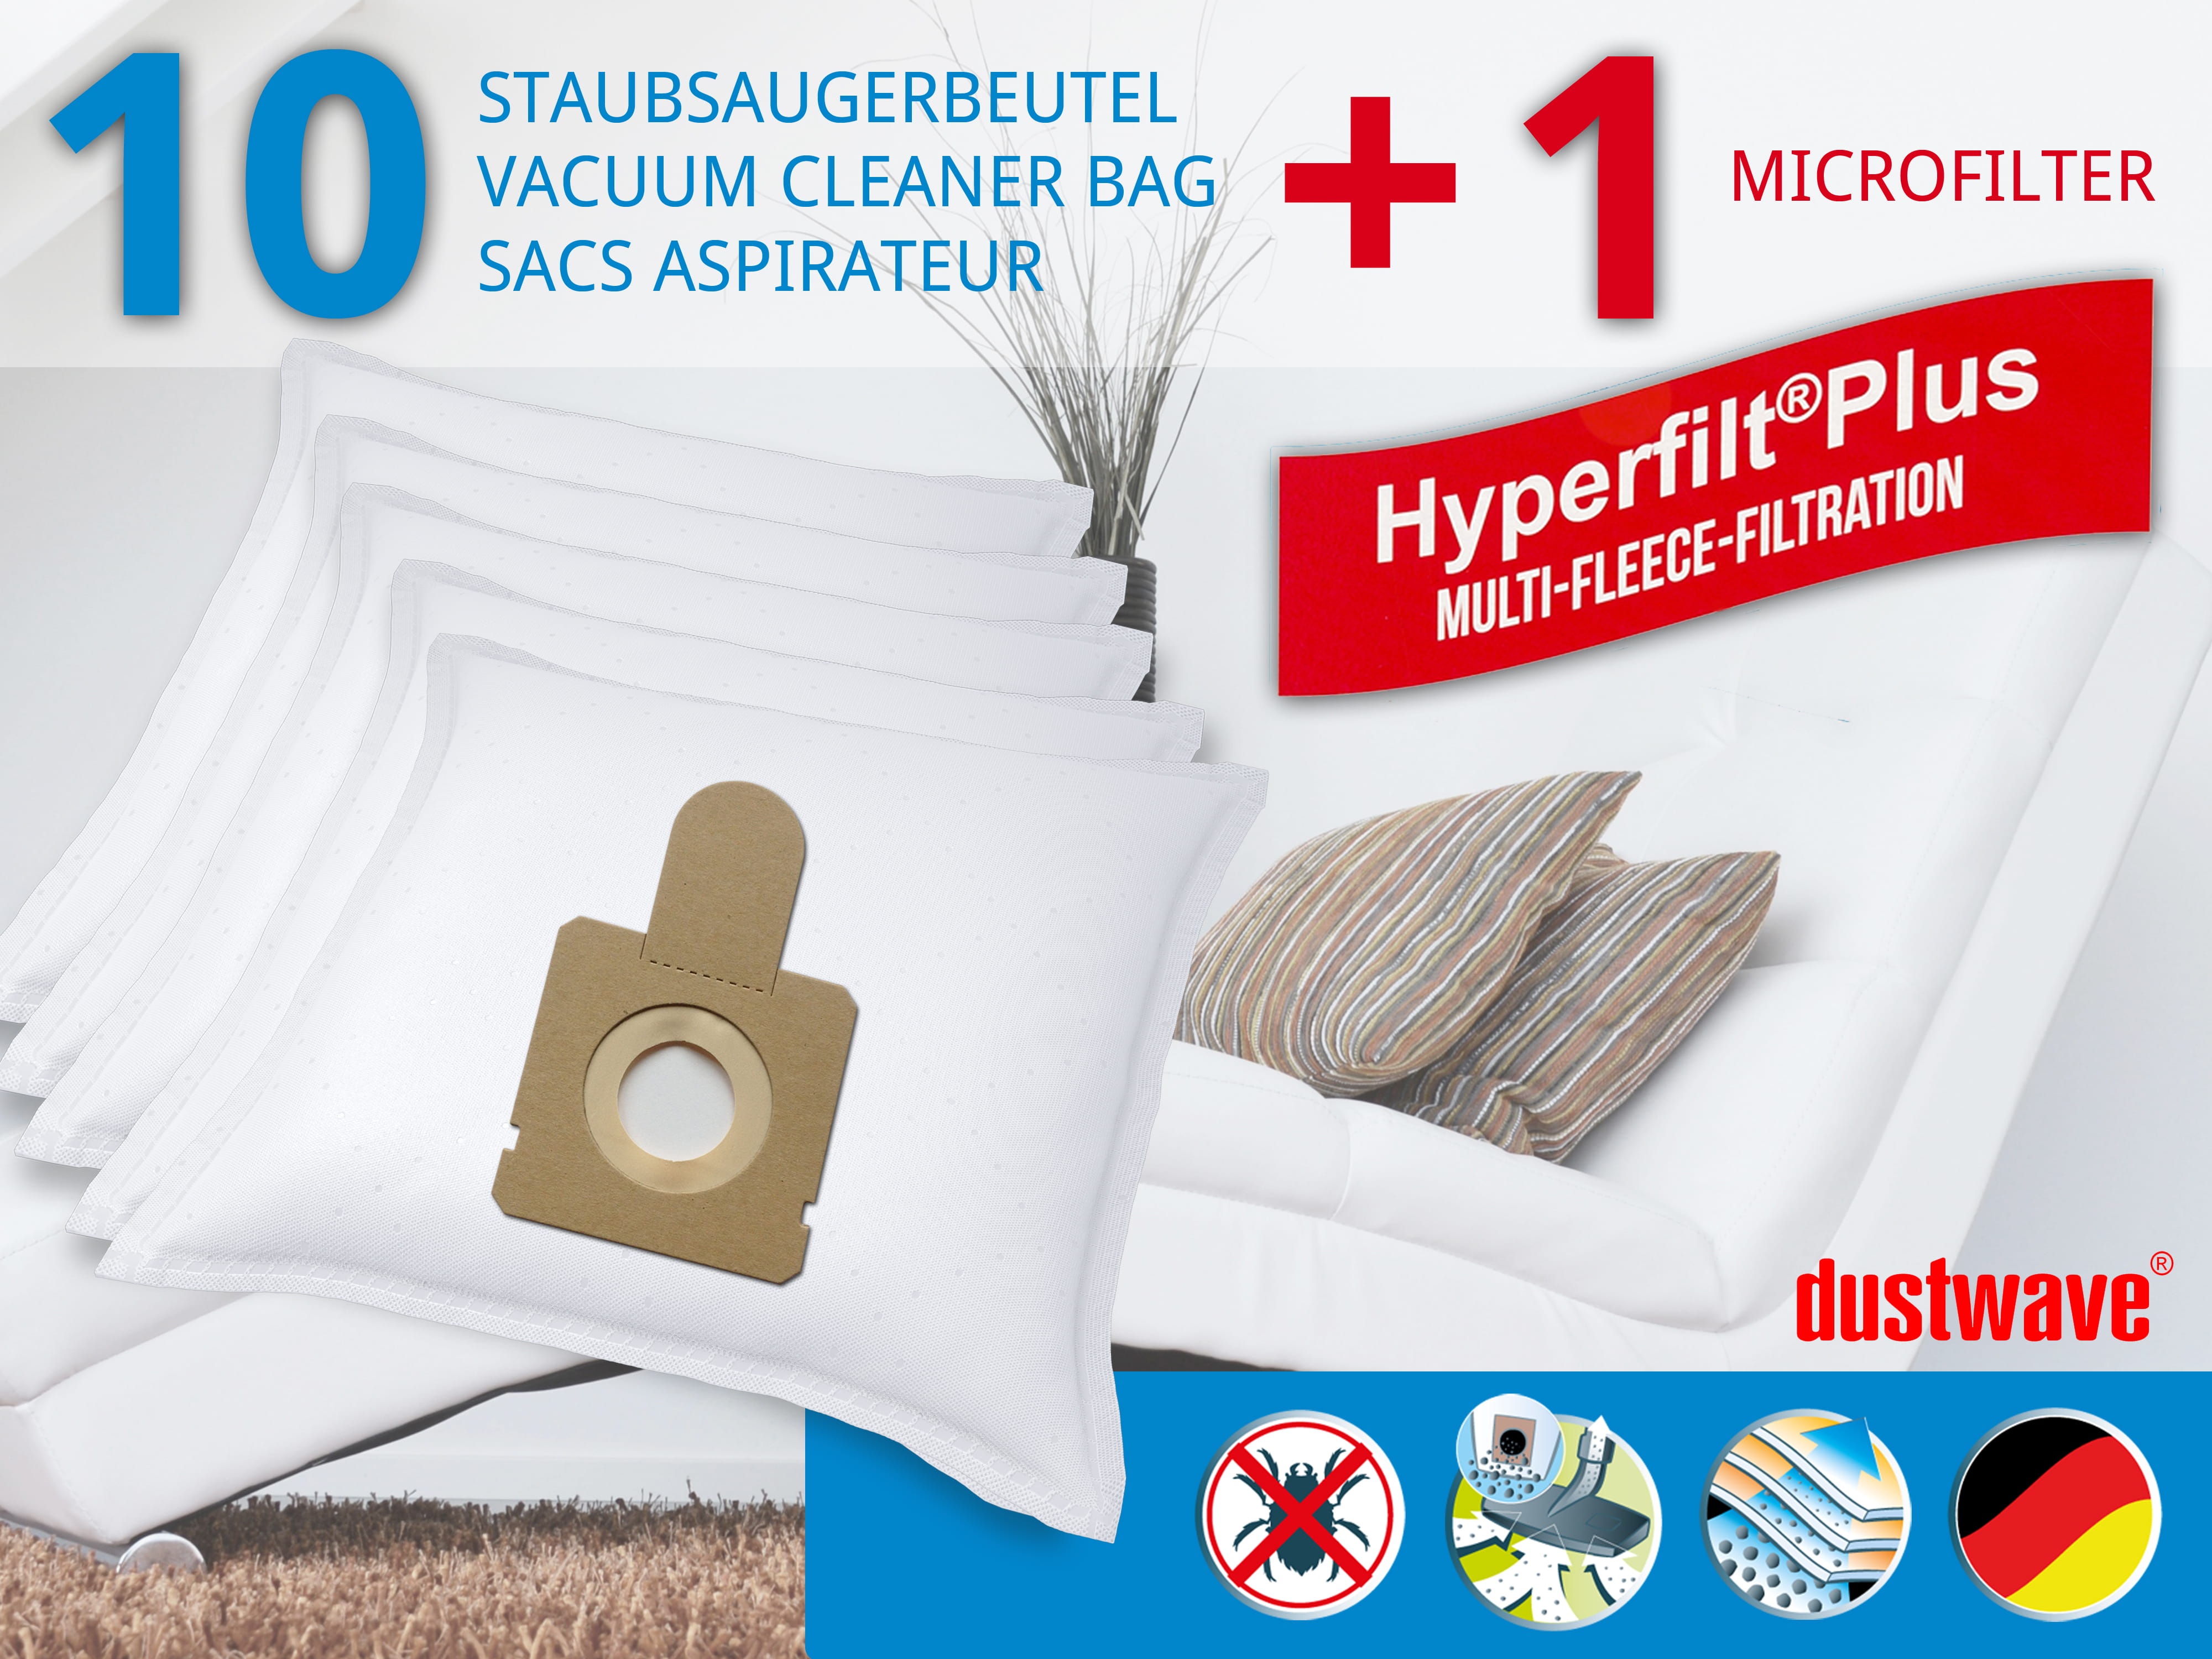 Dustwave® 10 Staubsaugerbeutel für Hoover TFS518 / TRTFS518 - hocheffizient, mehrlagiges Mikrovlies mit Hygieneverschluss - Made in Germany